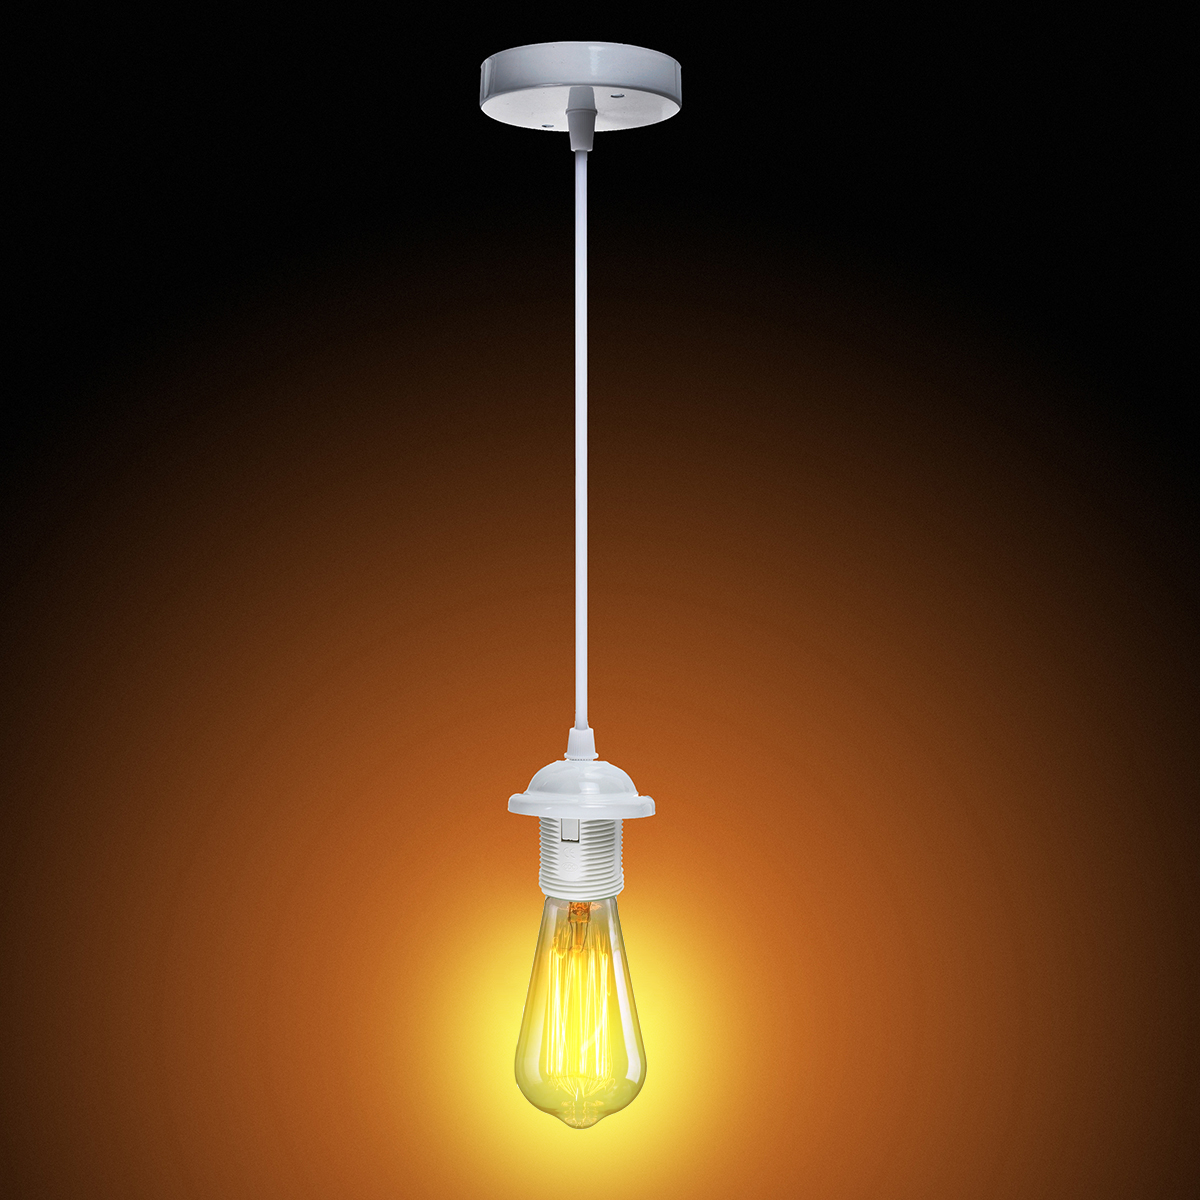 E26E27-Edison-Vintage-Retro-Pendant-Lamp-Holder-Ceiling-Light-Base-Socket-Bulb-Adapter-AC110-250V-1448040-3